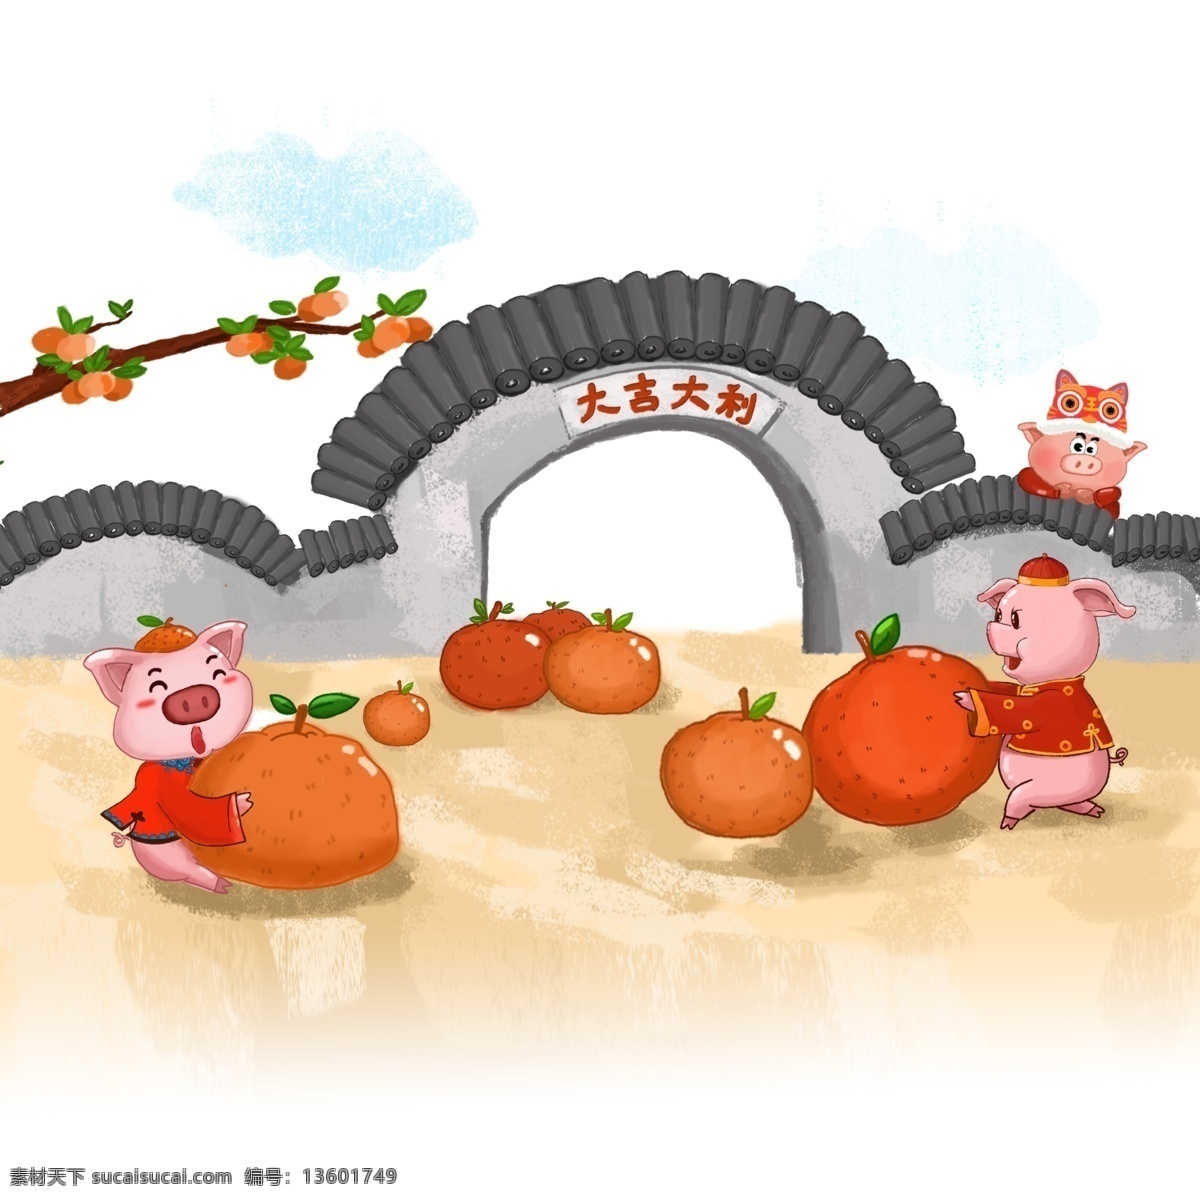 三 只 小 猪 大吉大利 分层 手绘 形象 春节 喜庆 猪年 橘子 唐装 虎帽 院子 院墙 吉利 卡通画 祈福 汉服